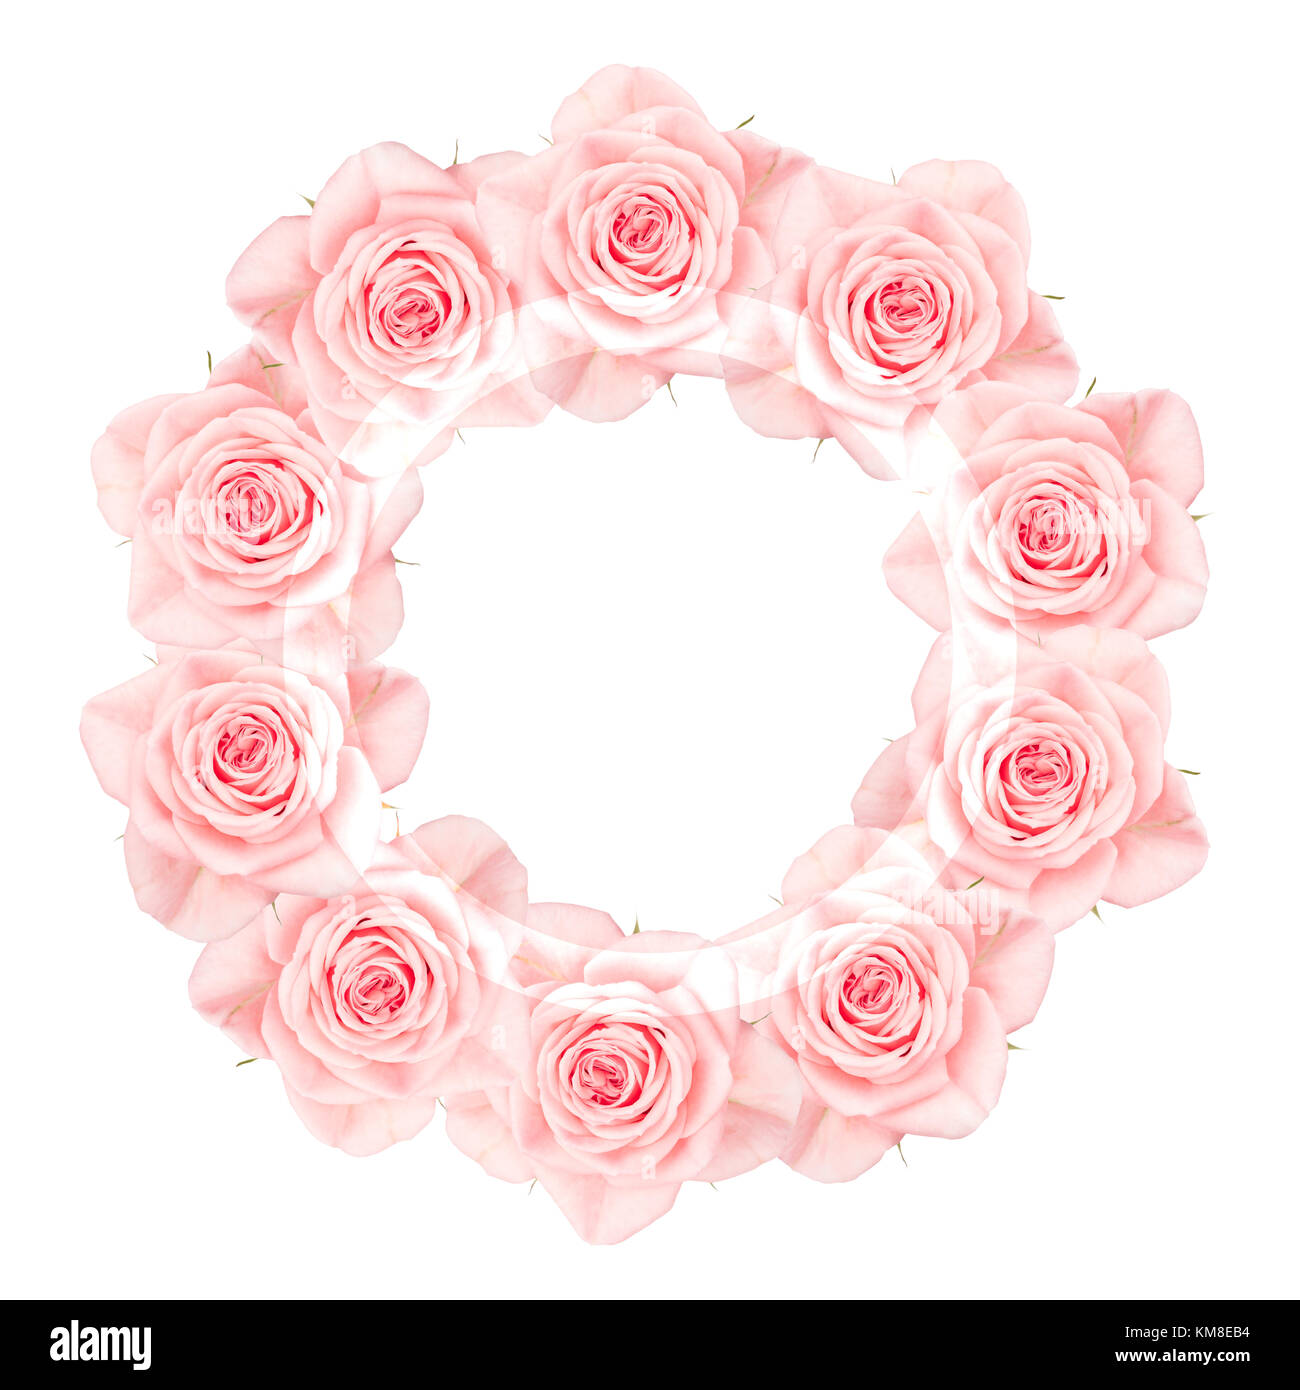 Close up collage de roses roses disposées en couronne, avec un semi-transparent blanc bague blanche, isolated on white Banque D'Images